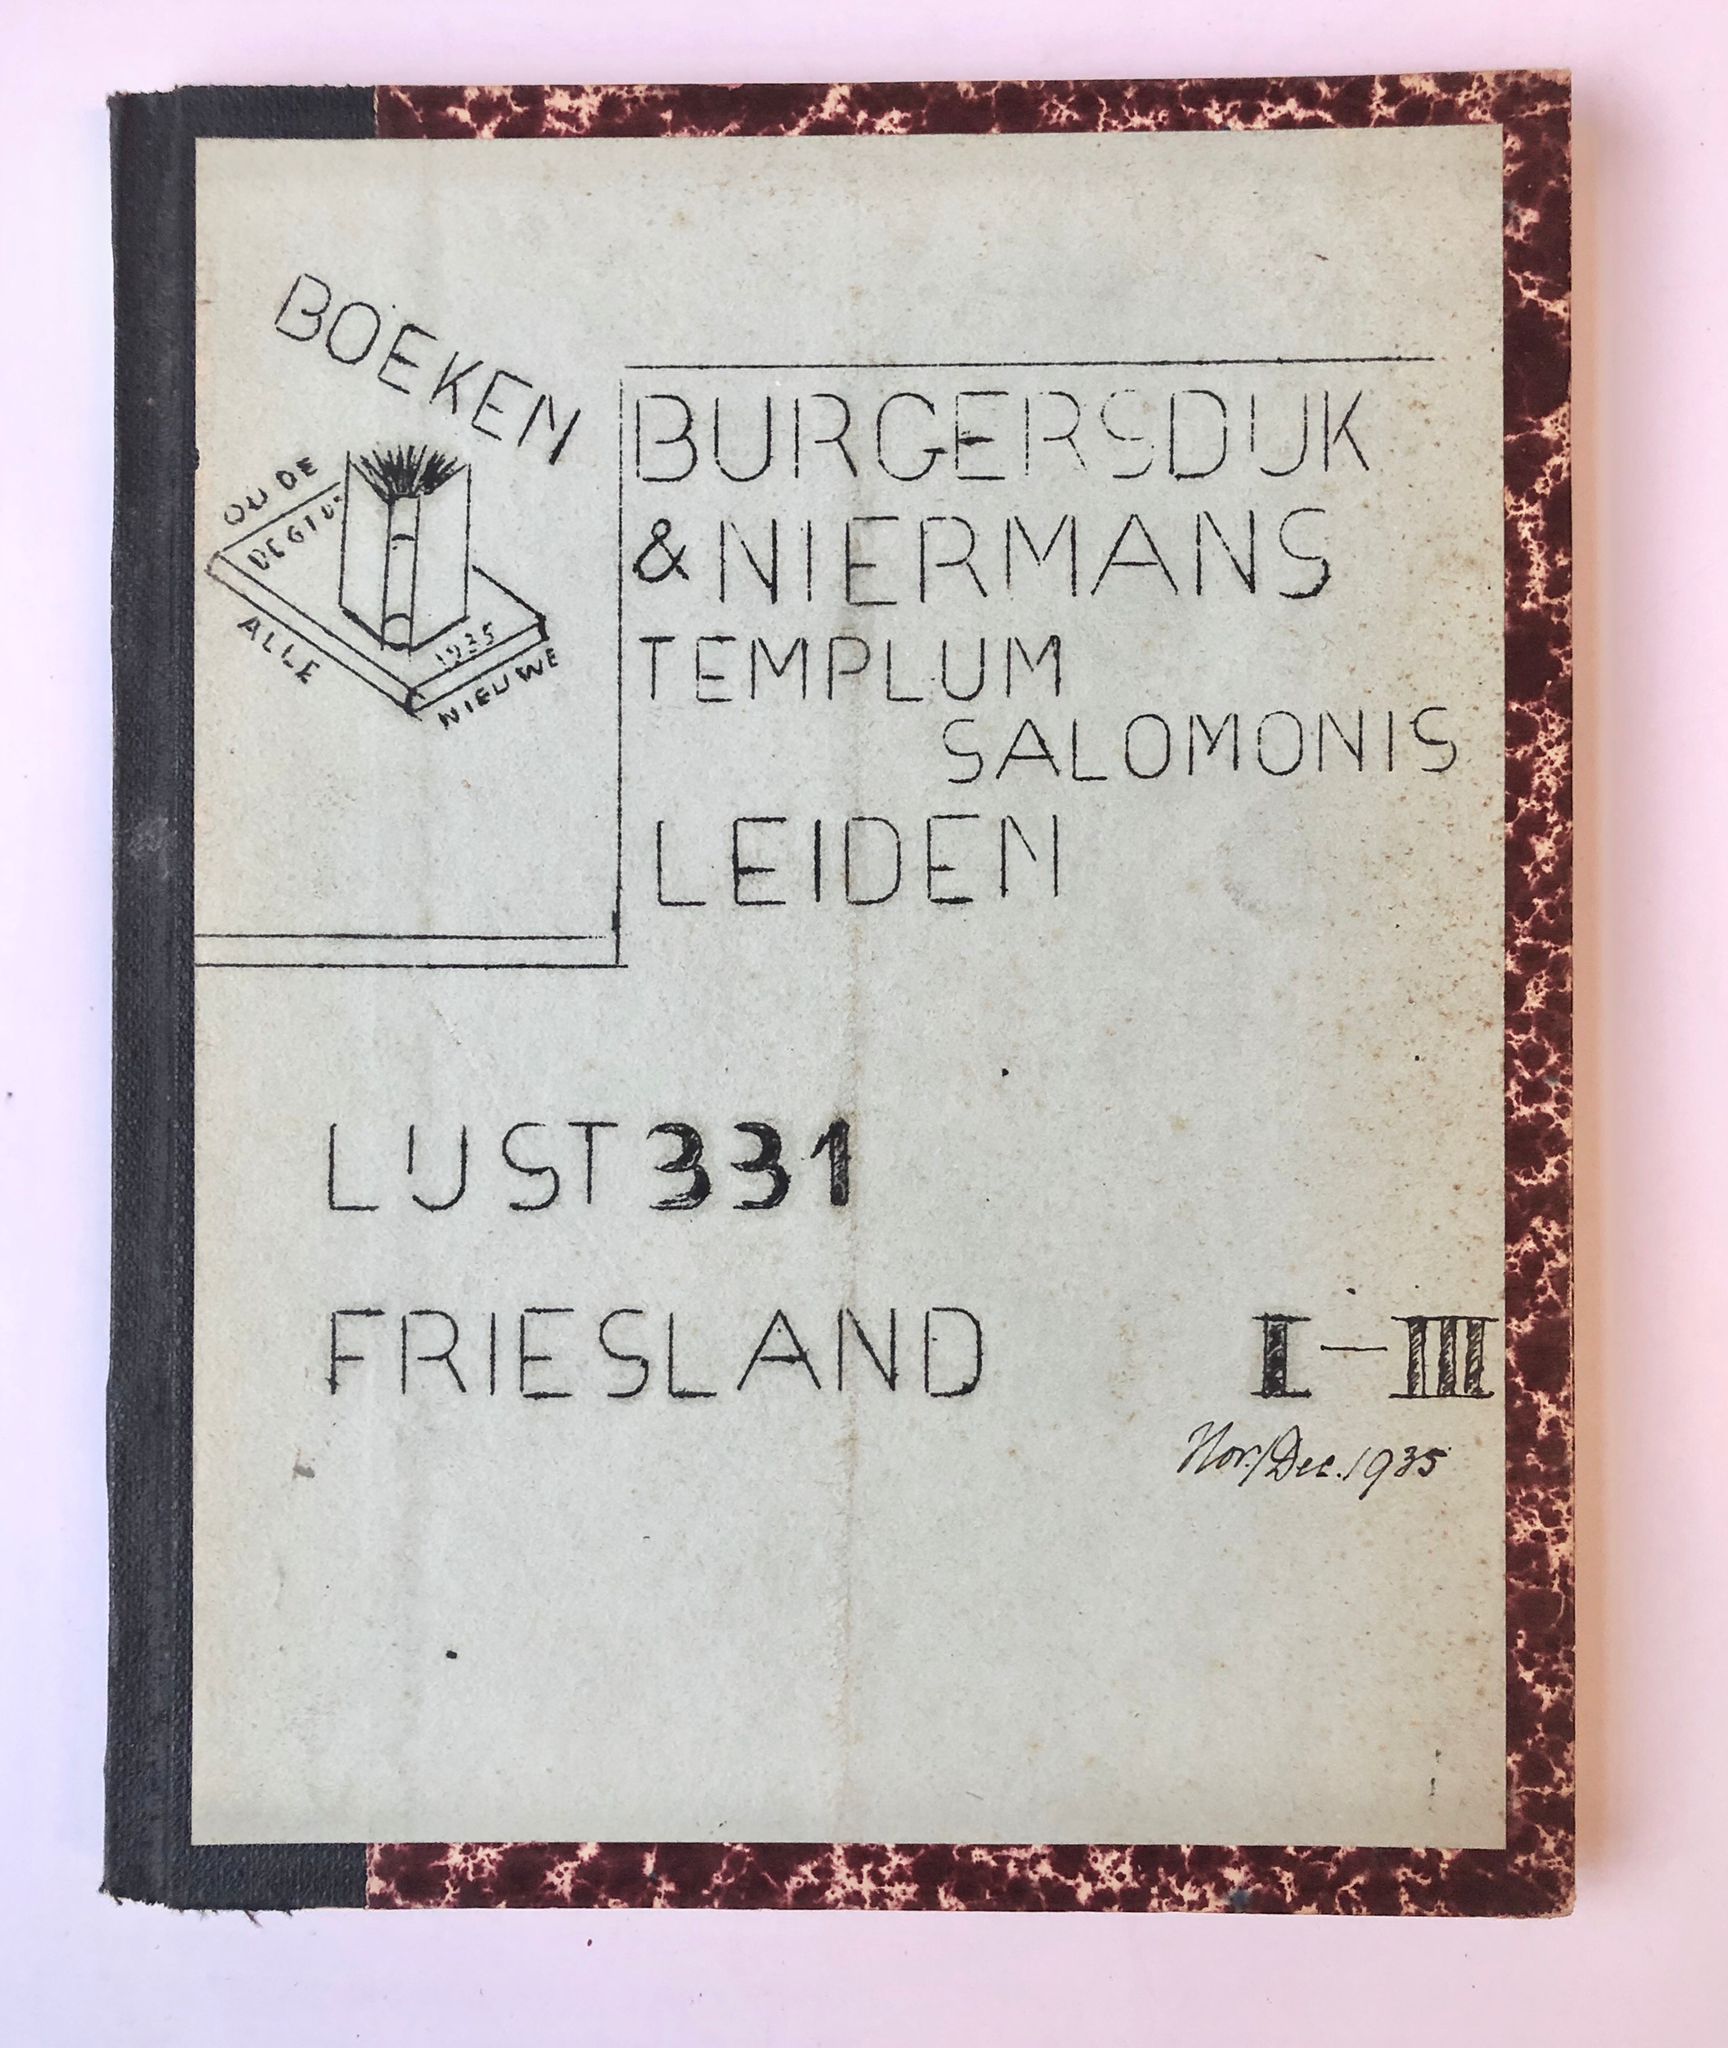 [Sales catalogue Leiden, Friesland, 1935] Three Bulletins Burgersdijk & Niermans Templum Salomonis Leiden, Lijst 331 Friesland, I-III, 1935, each about 17 pp.